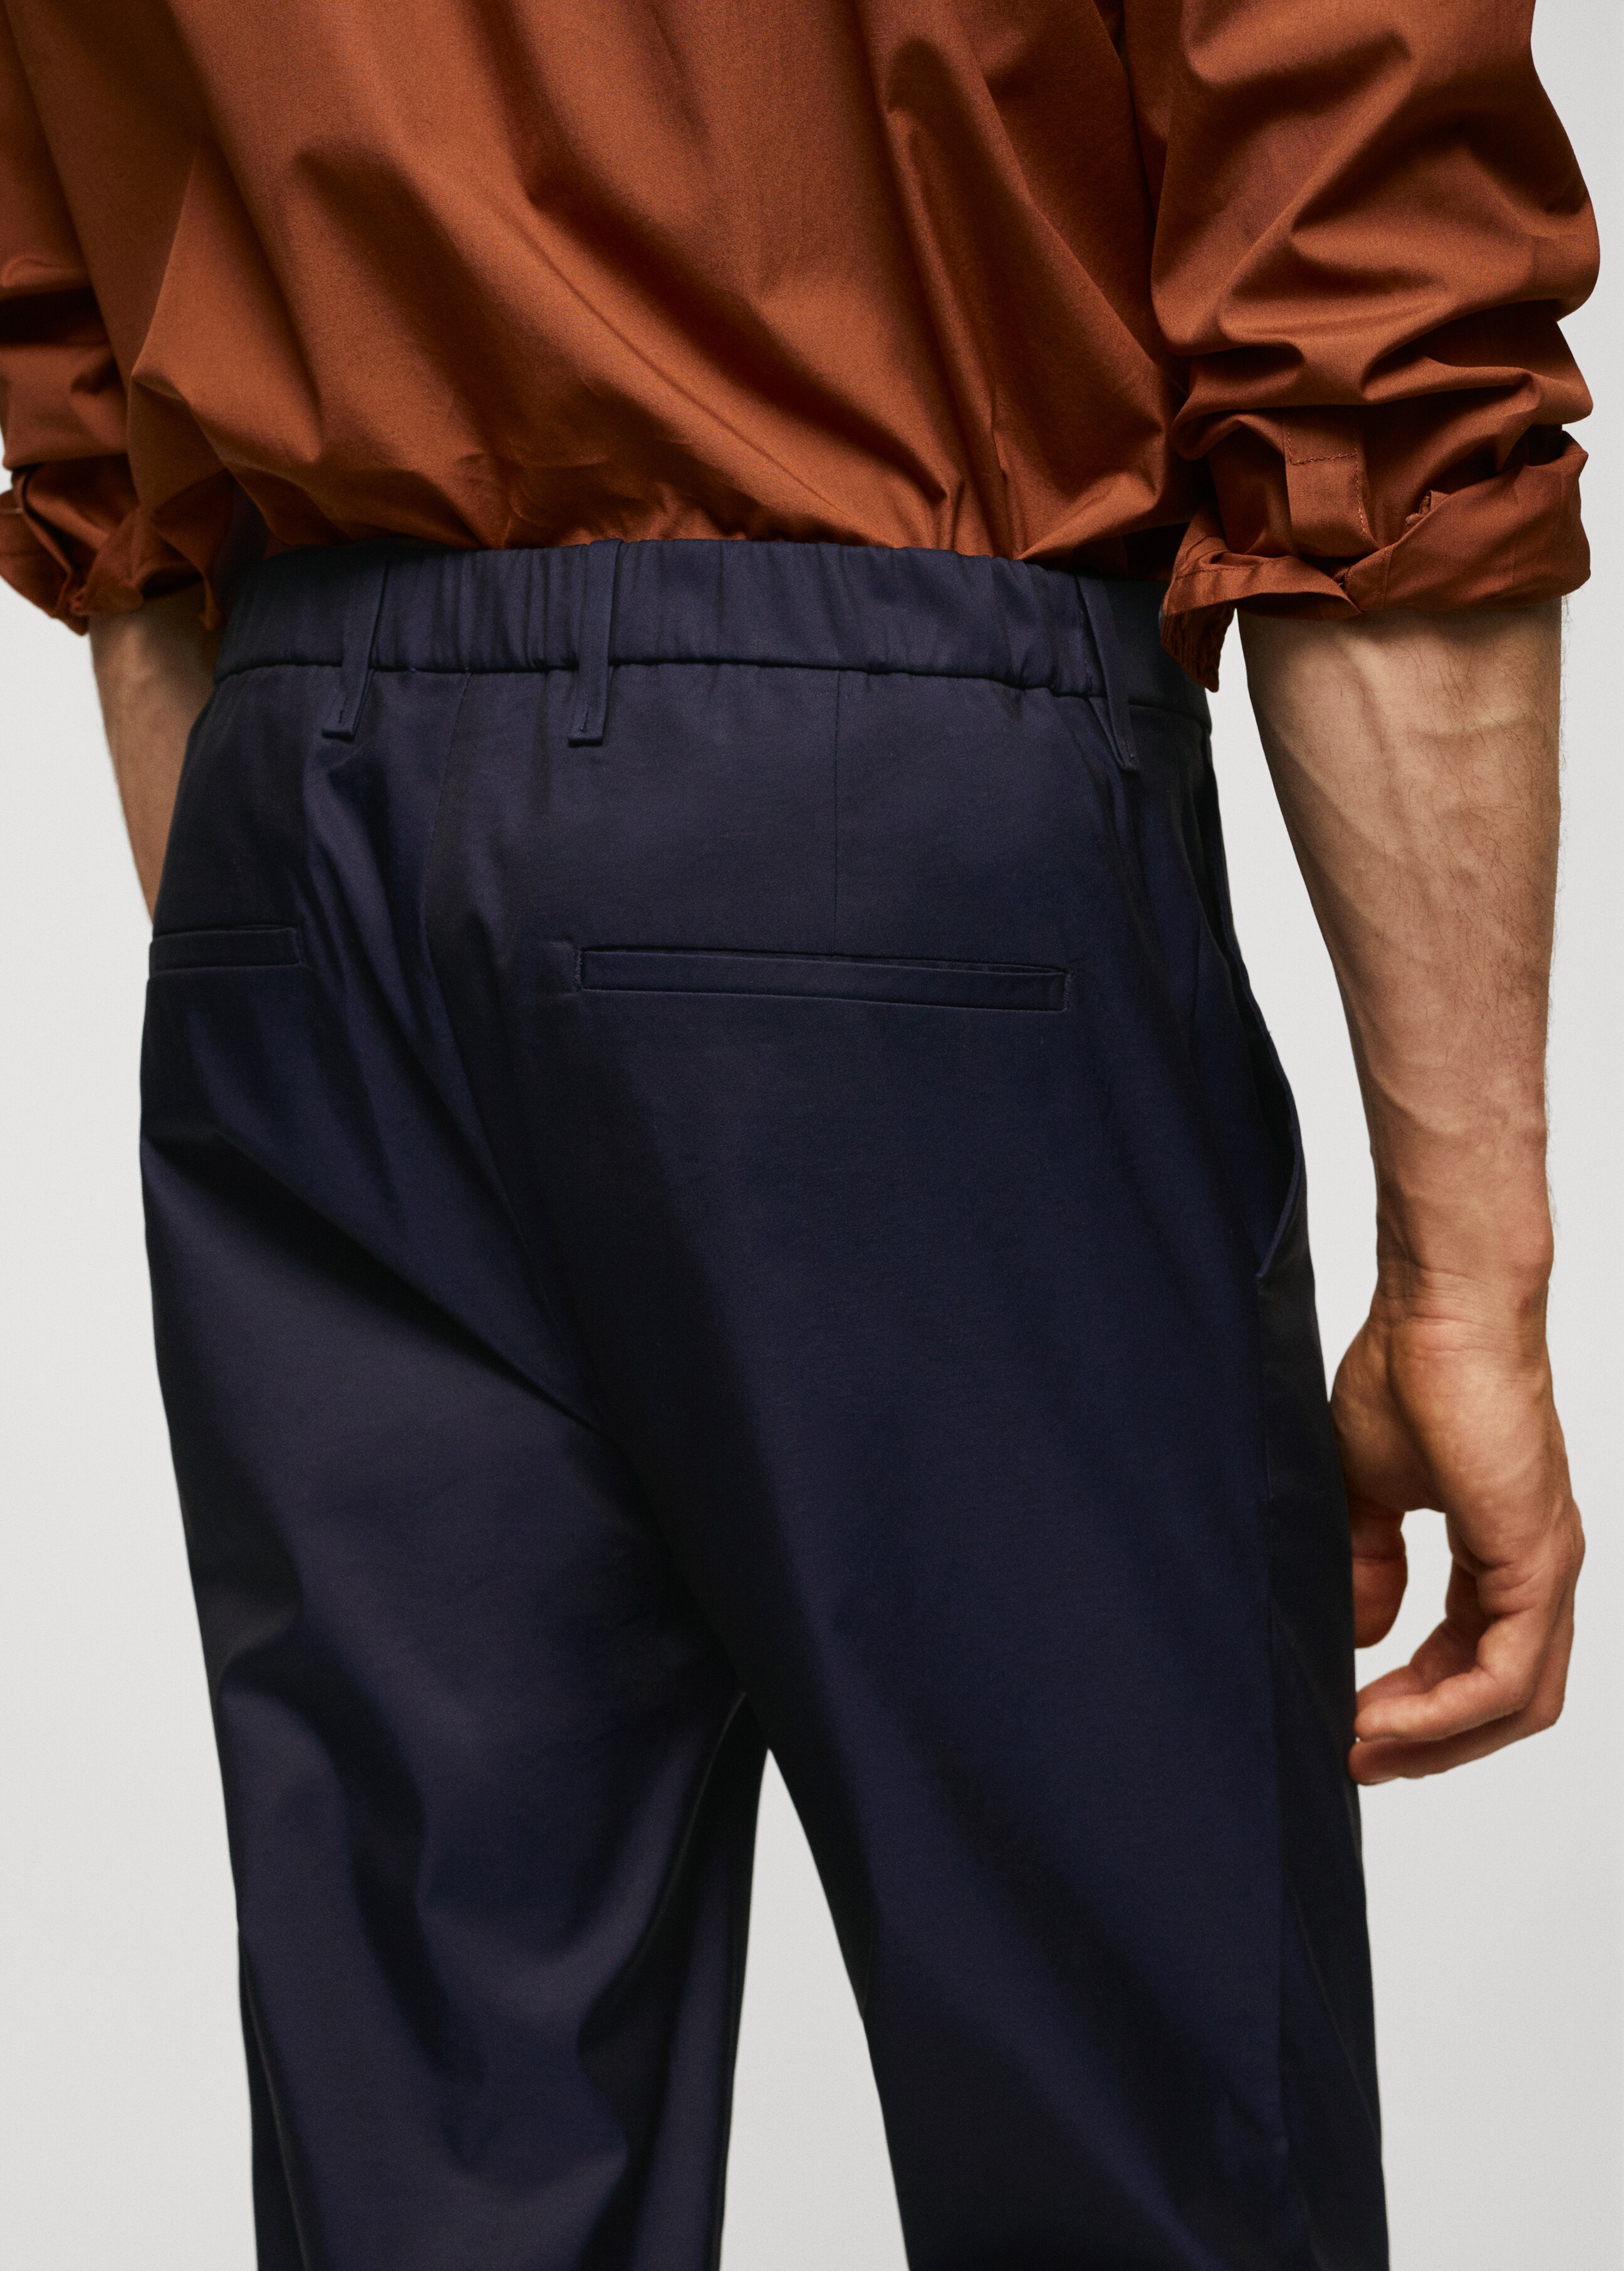 Pantalón slim fit algodón - Detalle del artículo 2